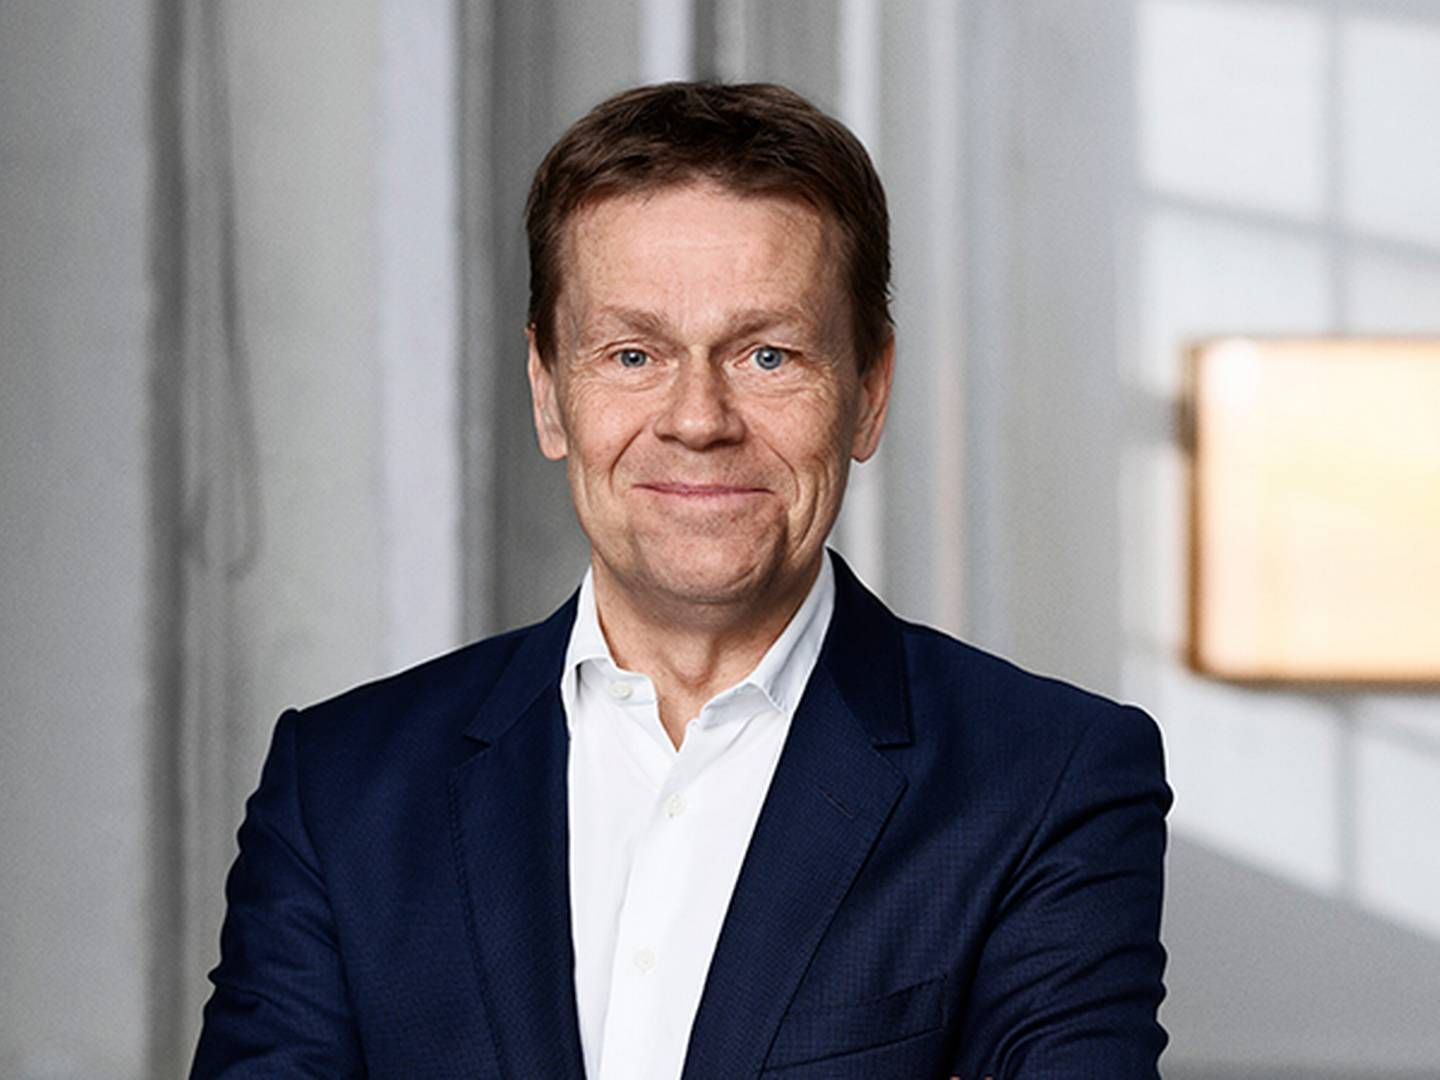 Lars Folkmann overtog stillingen som topchef hos Forenede-koncernen i begyndelsen af 2021. Tidligere har han siddet i direktionen hos ISS. | Foto: PR